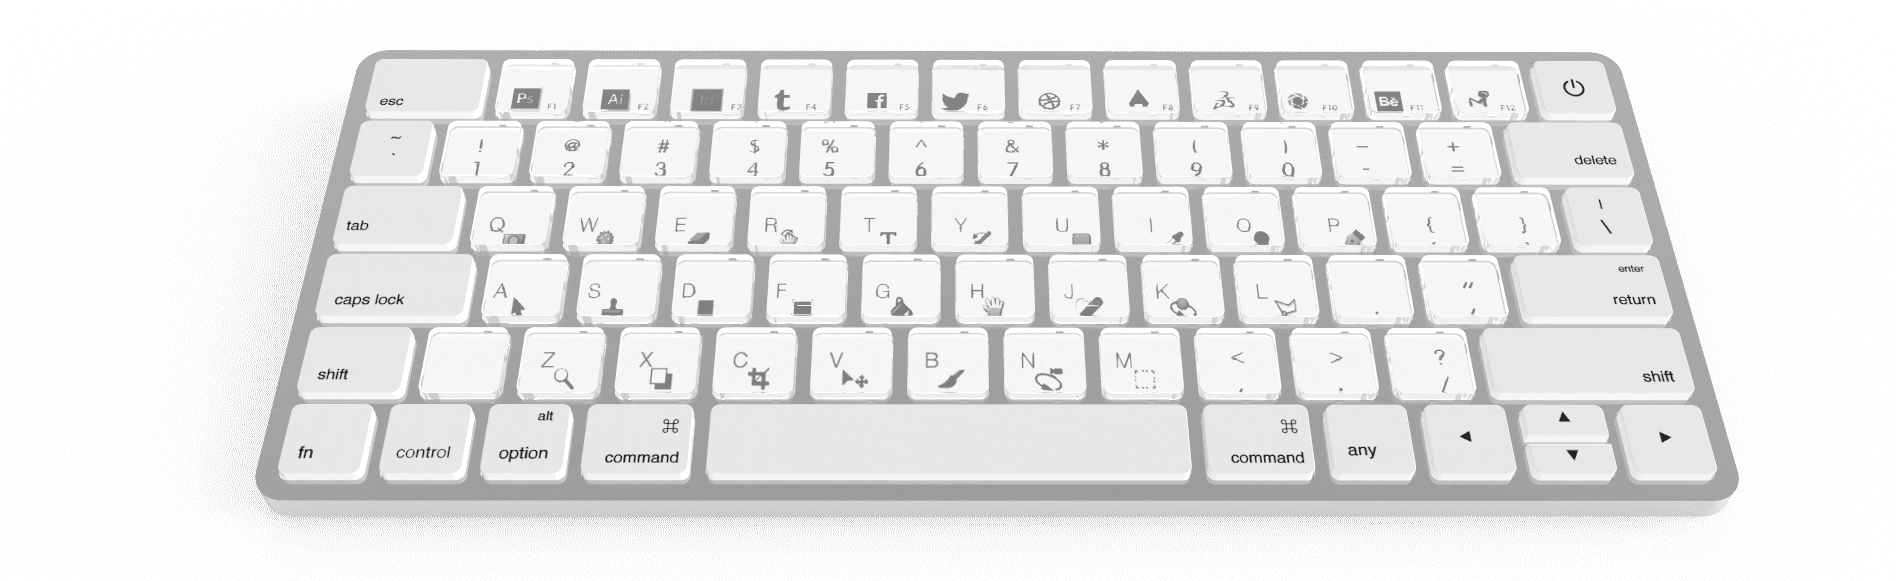 Sonder teclado e-ink